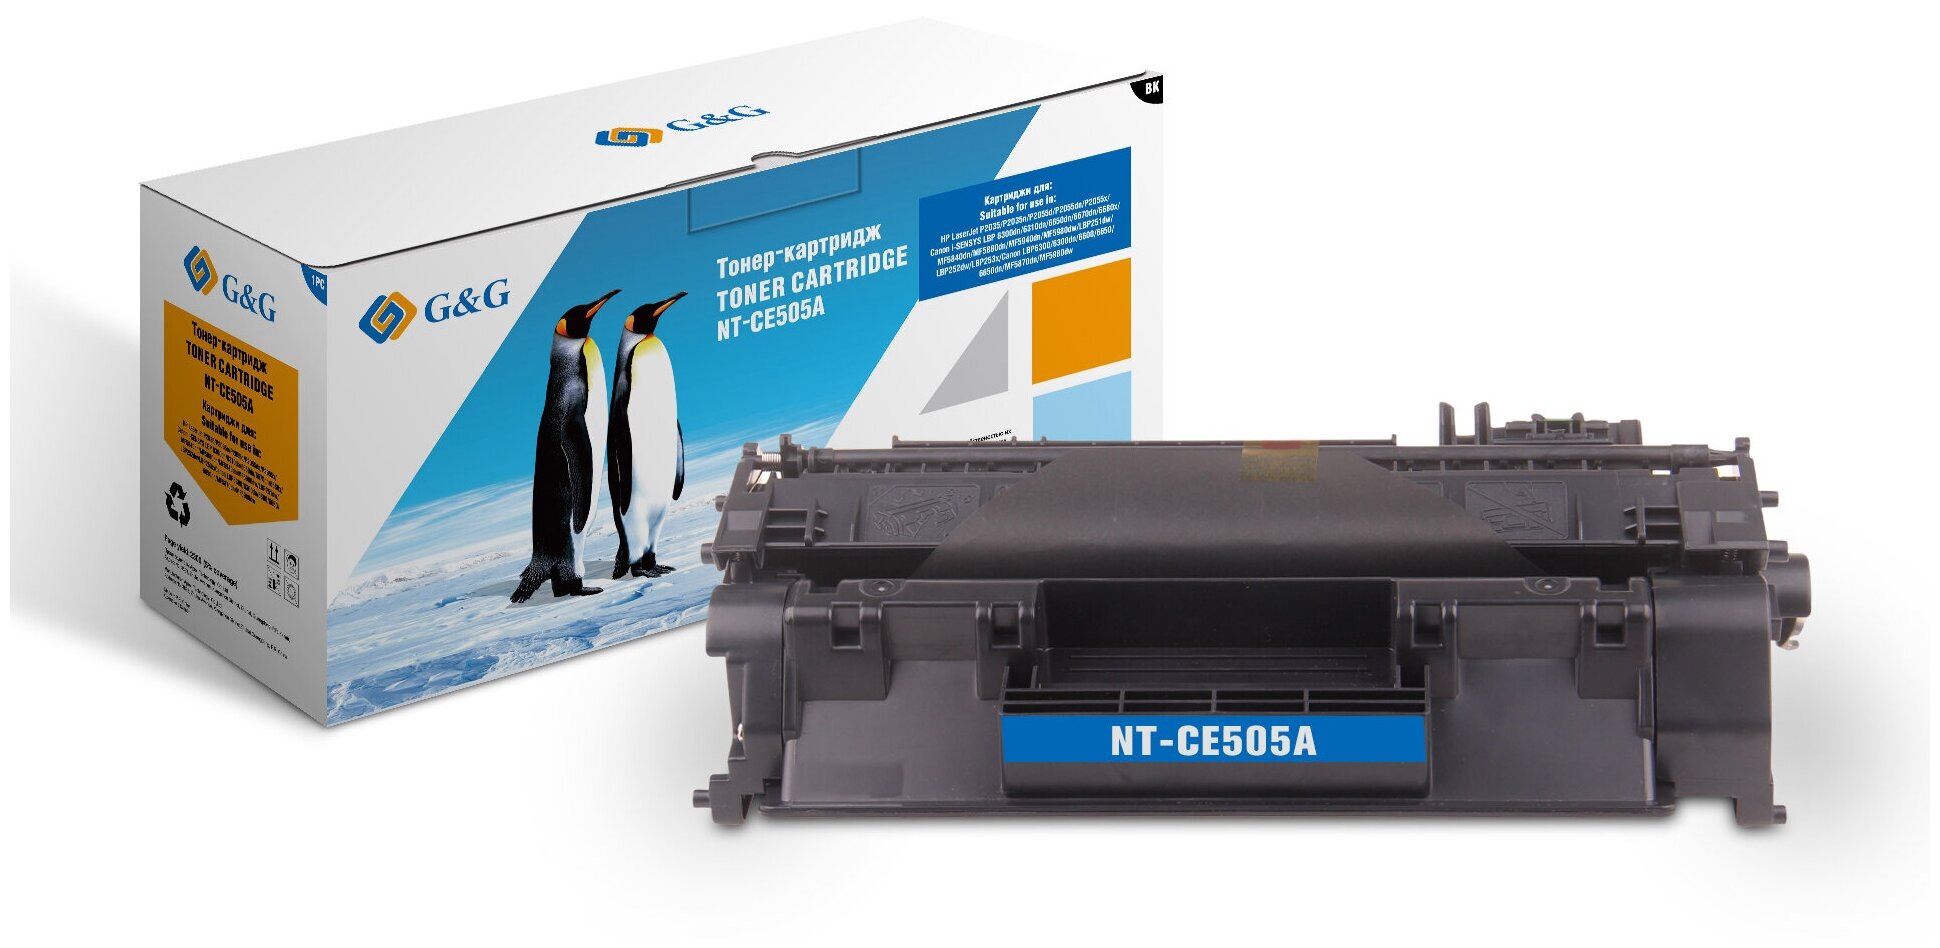 Картридж G&G NT-CE505A совместимый тонер картридж (HP 05A - CE505A) 2300 стр, черный